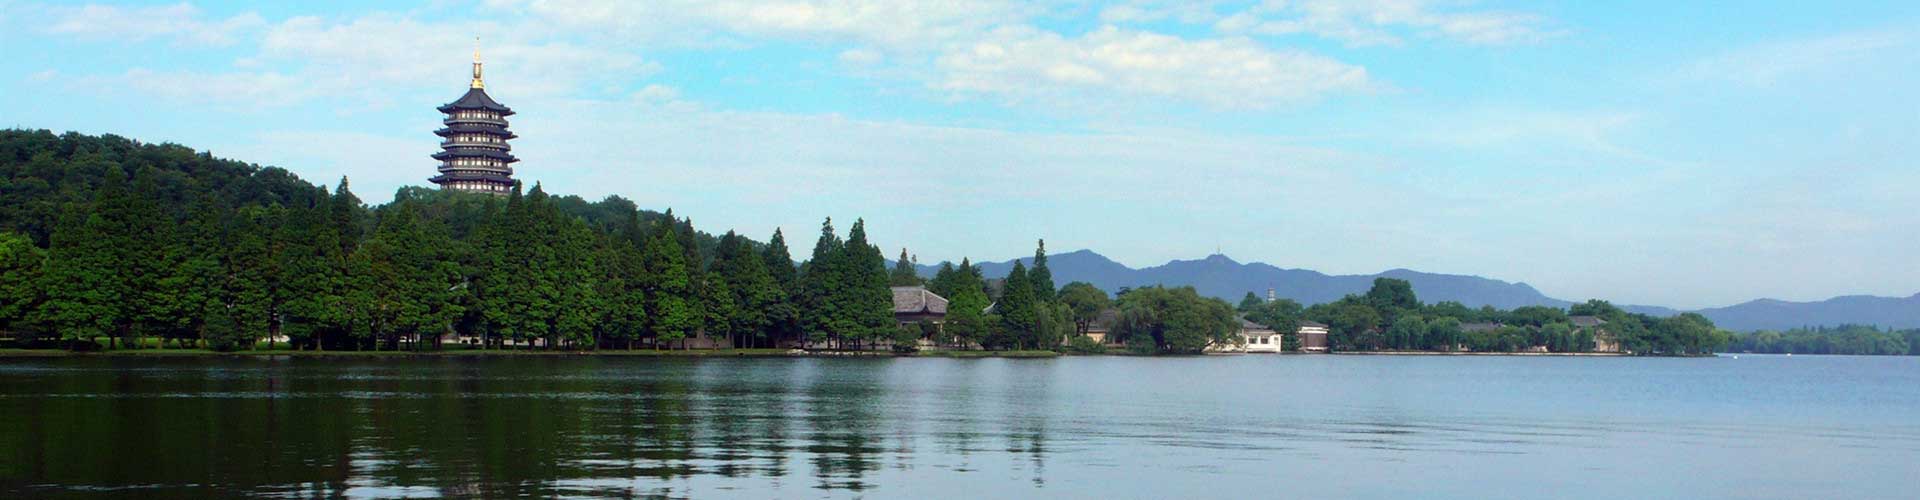 Lago del Oeste, Viajes a Hangzhou